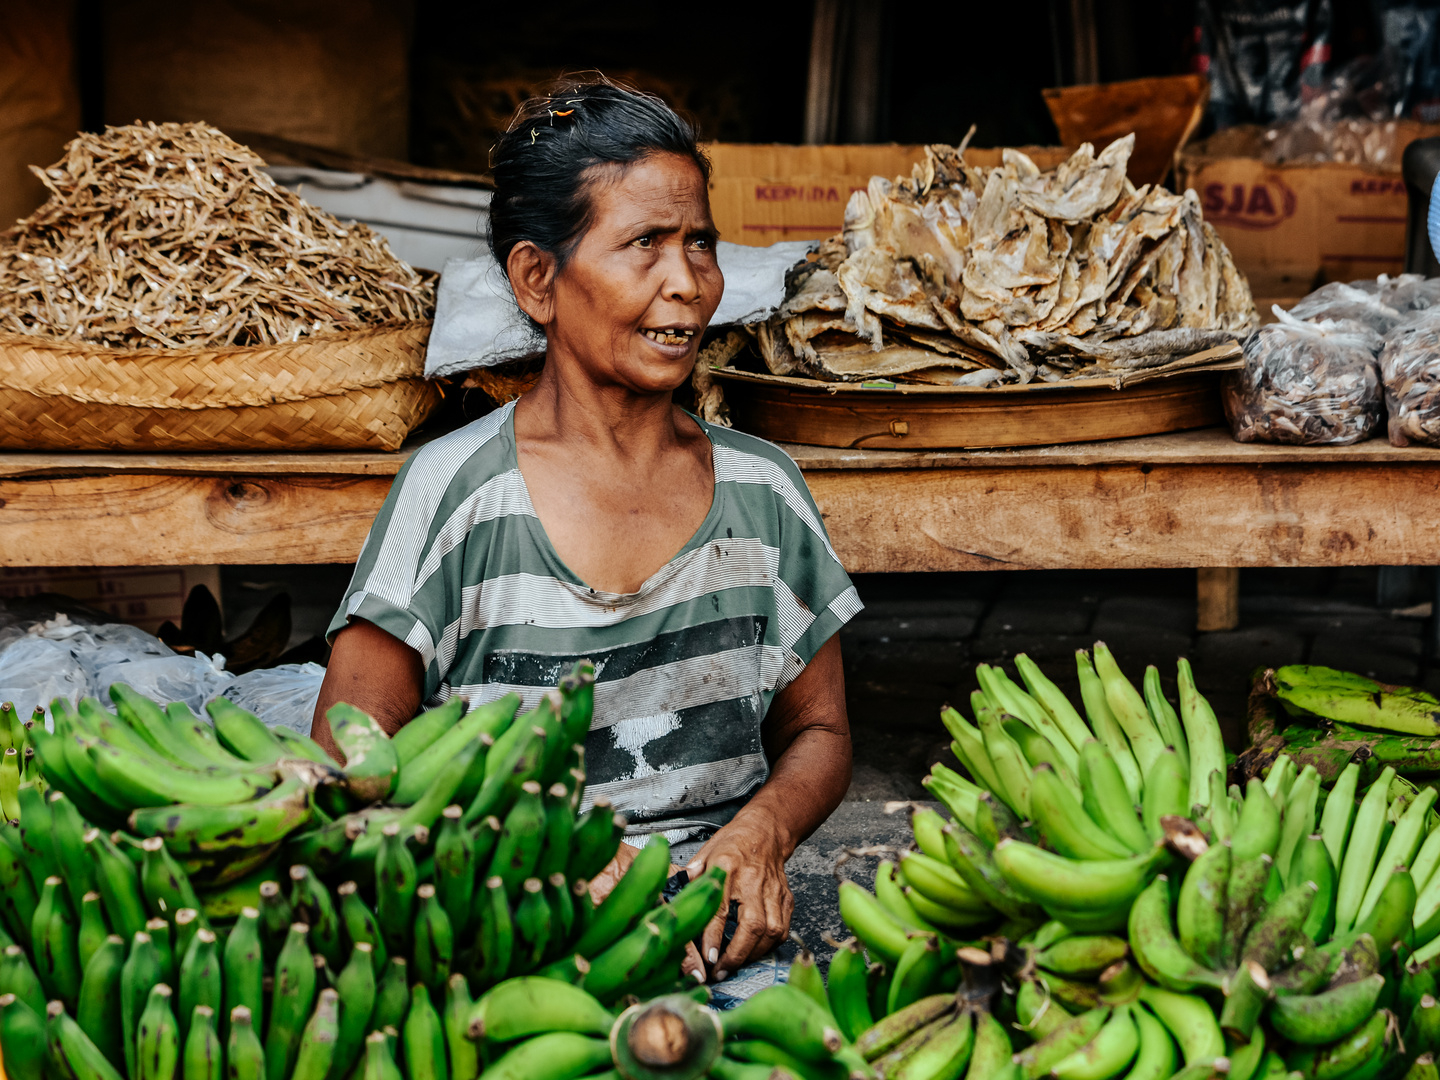 Bananenverkäuferin 